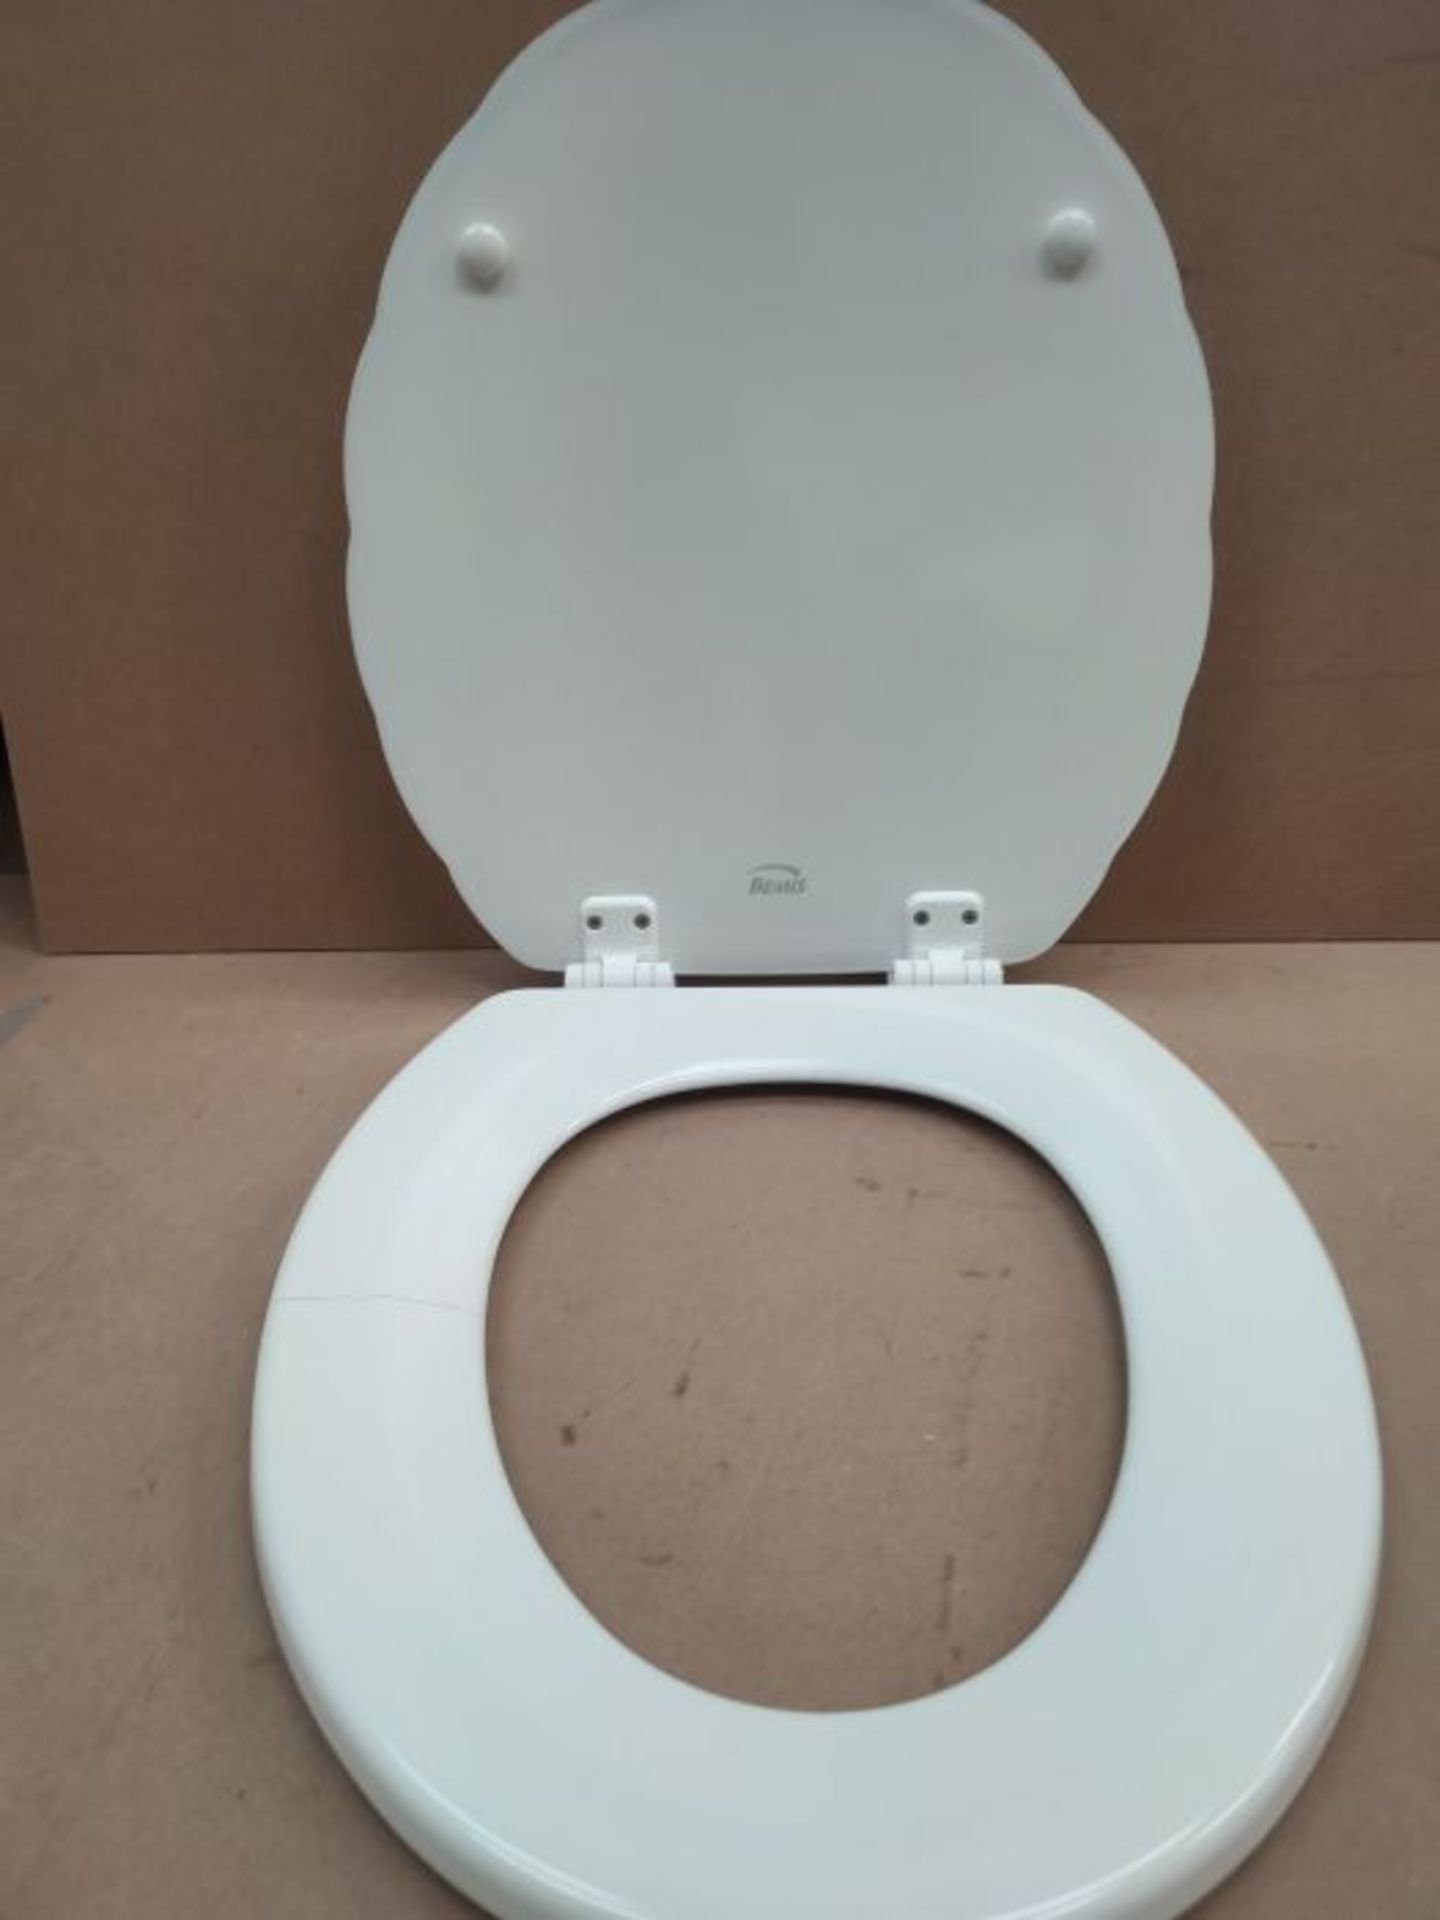 [CRACKED] Bemis 5900ZART000 Shell Toilet Seat, White - Image 2 of 2